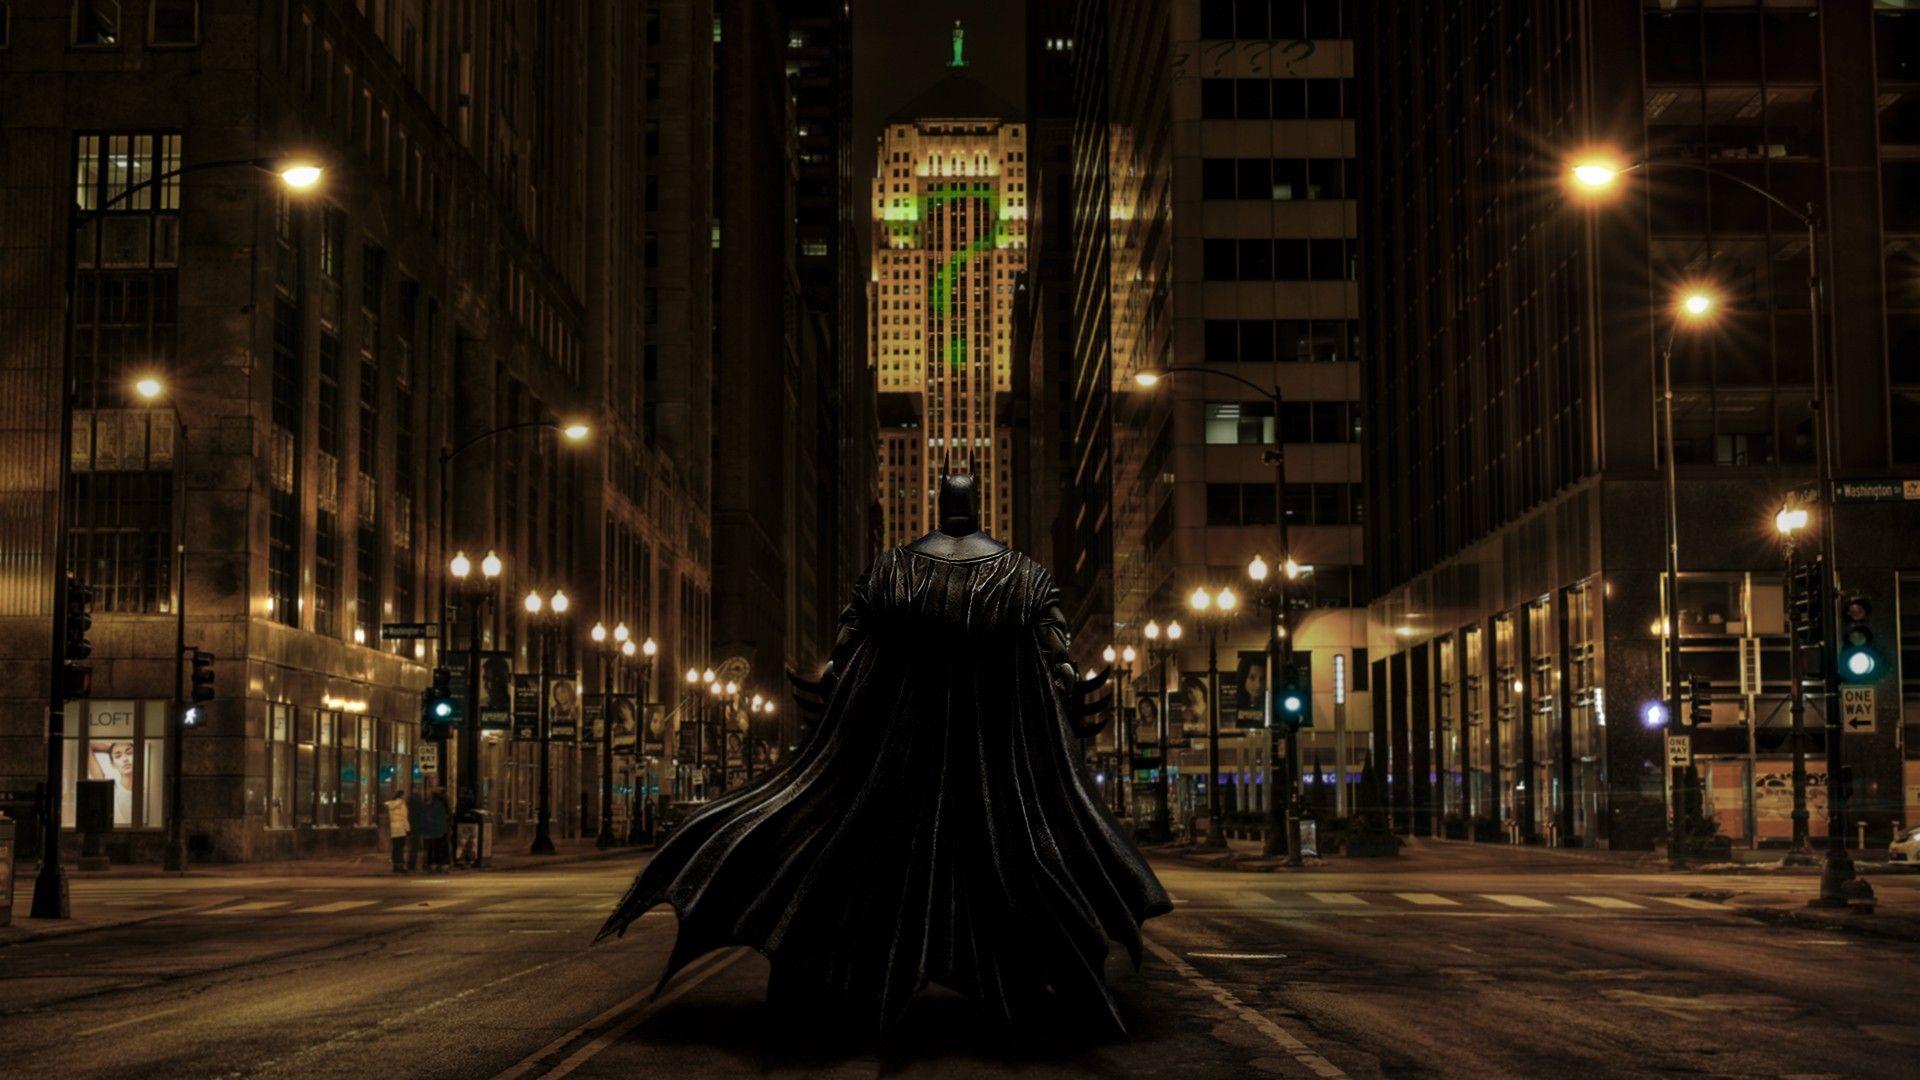 Batman City Wallpaper Photo Toueb. Wallpaper. City